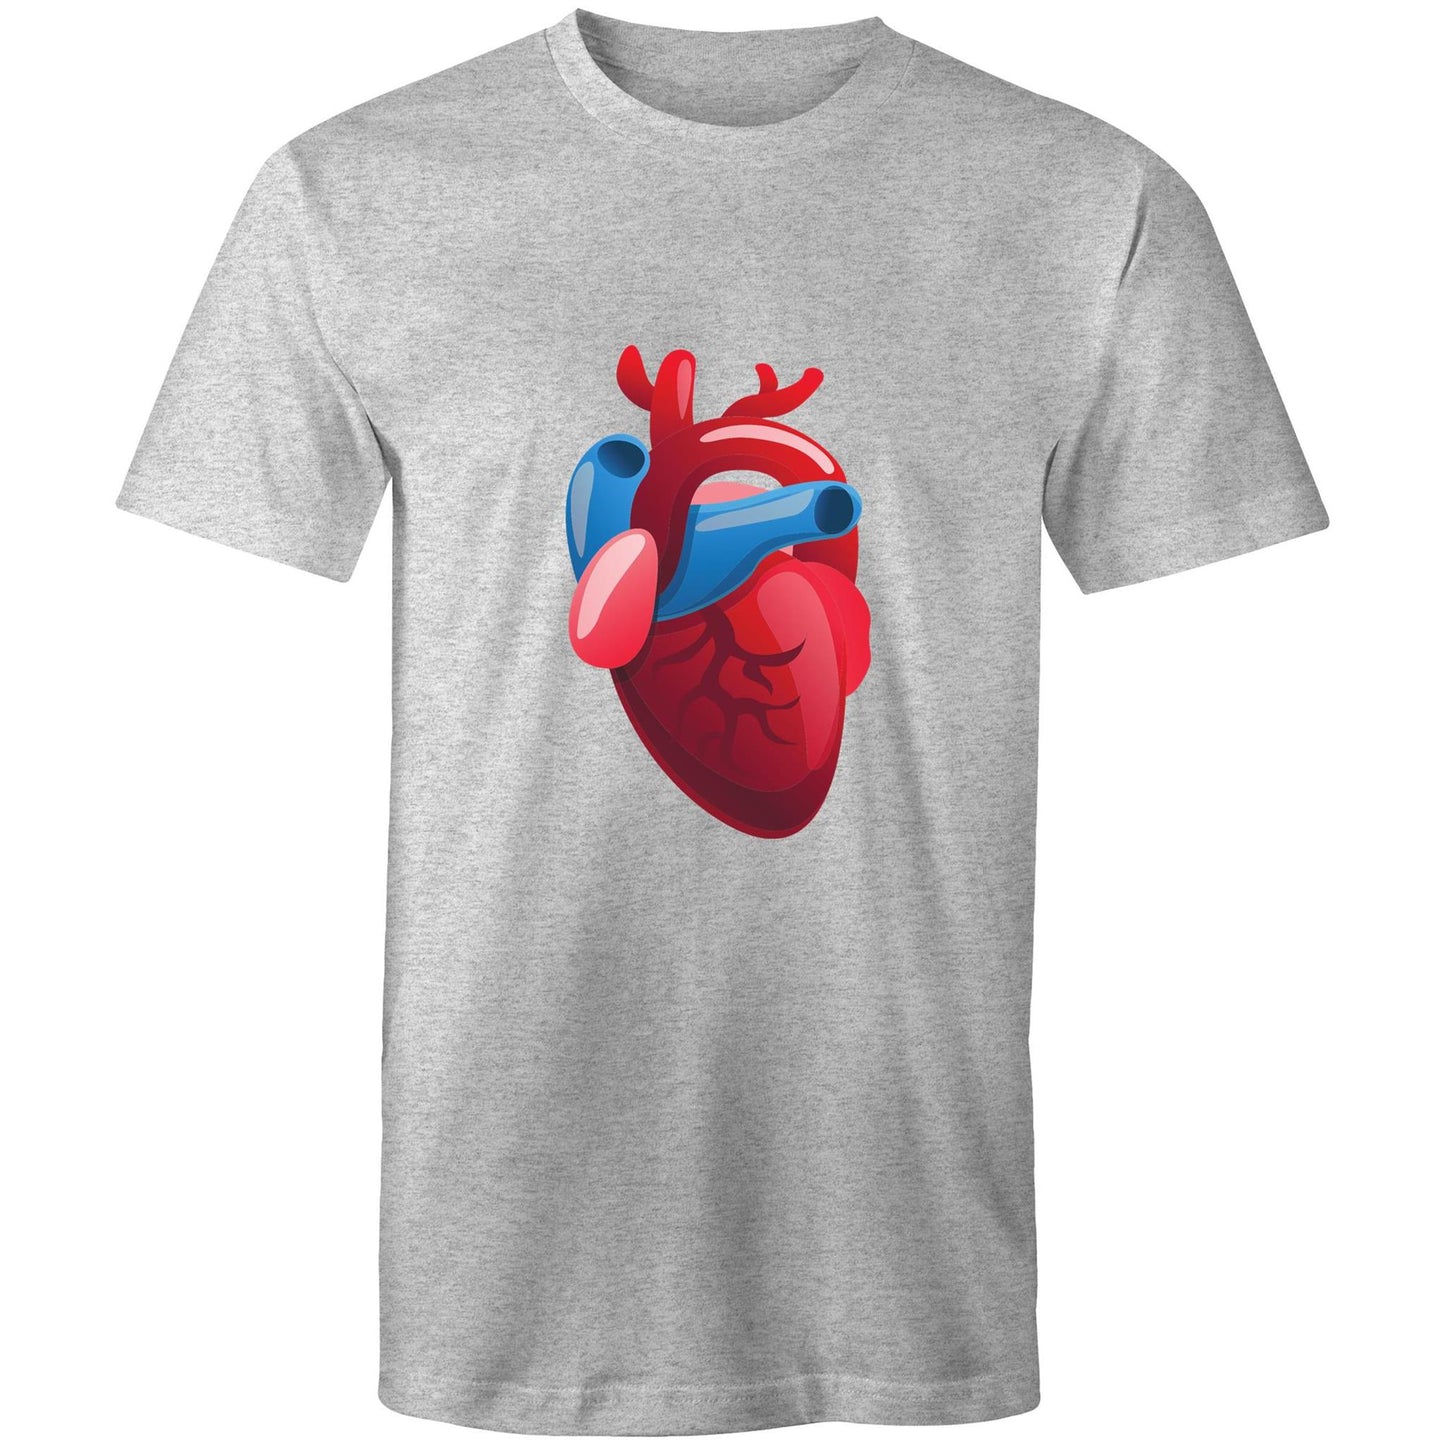 Real Human Heart - Mens T-Shirt